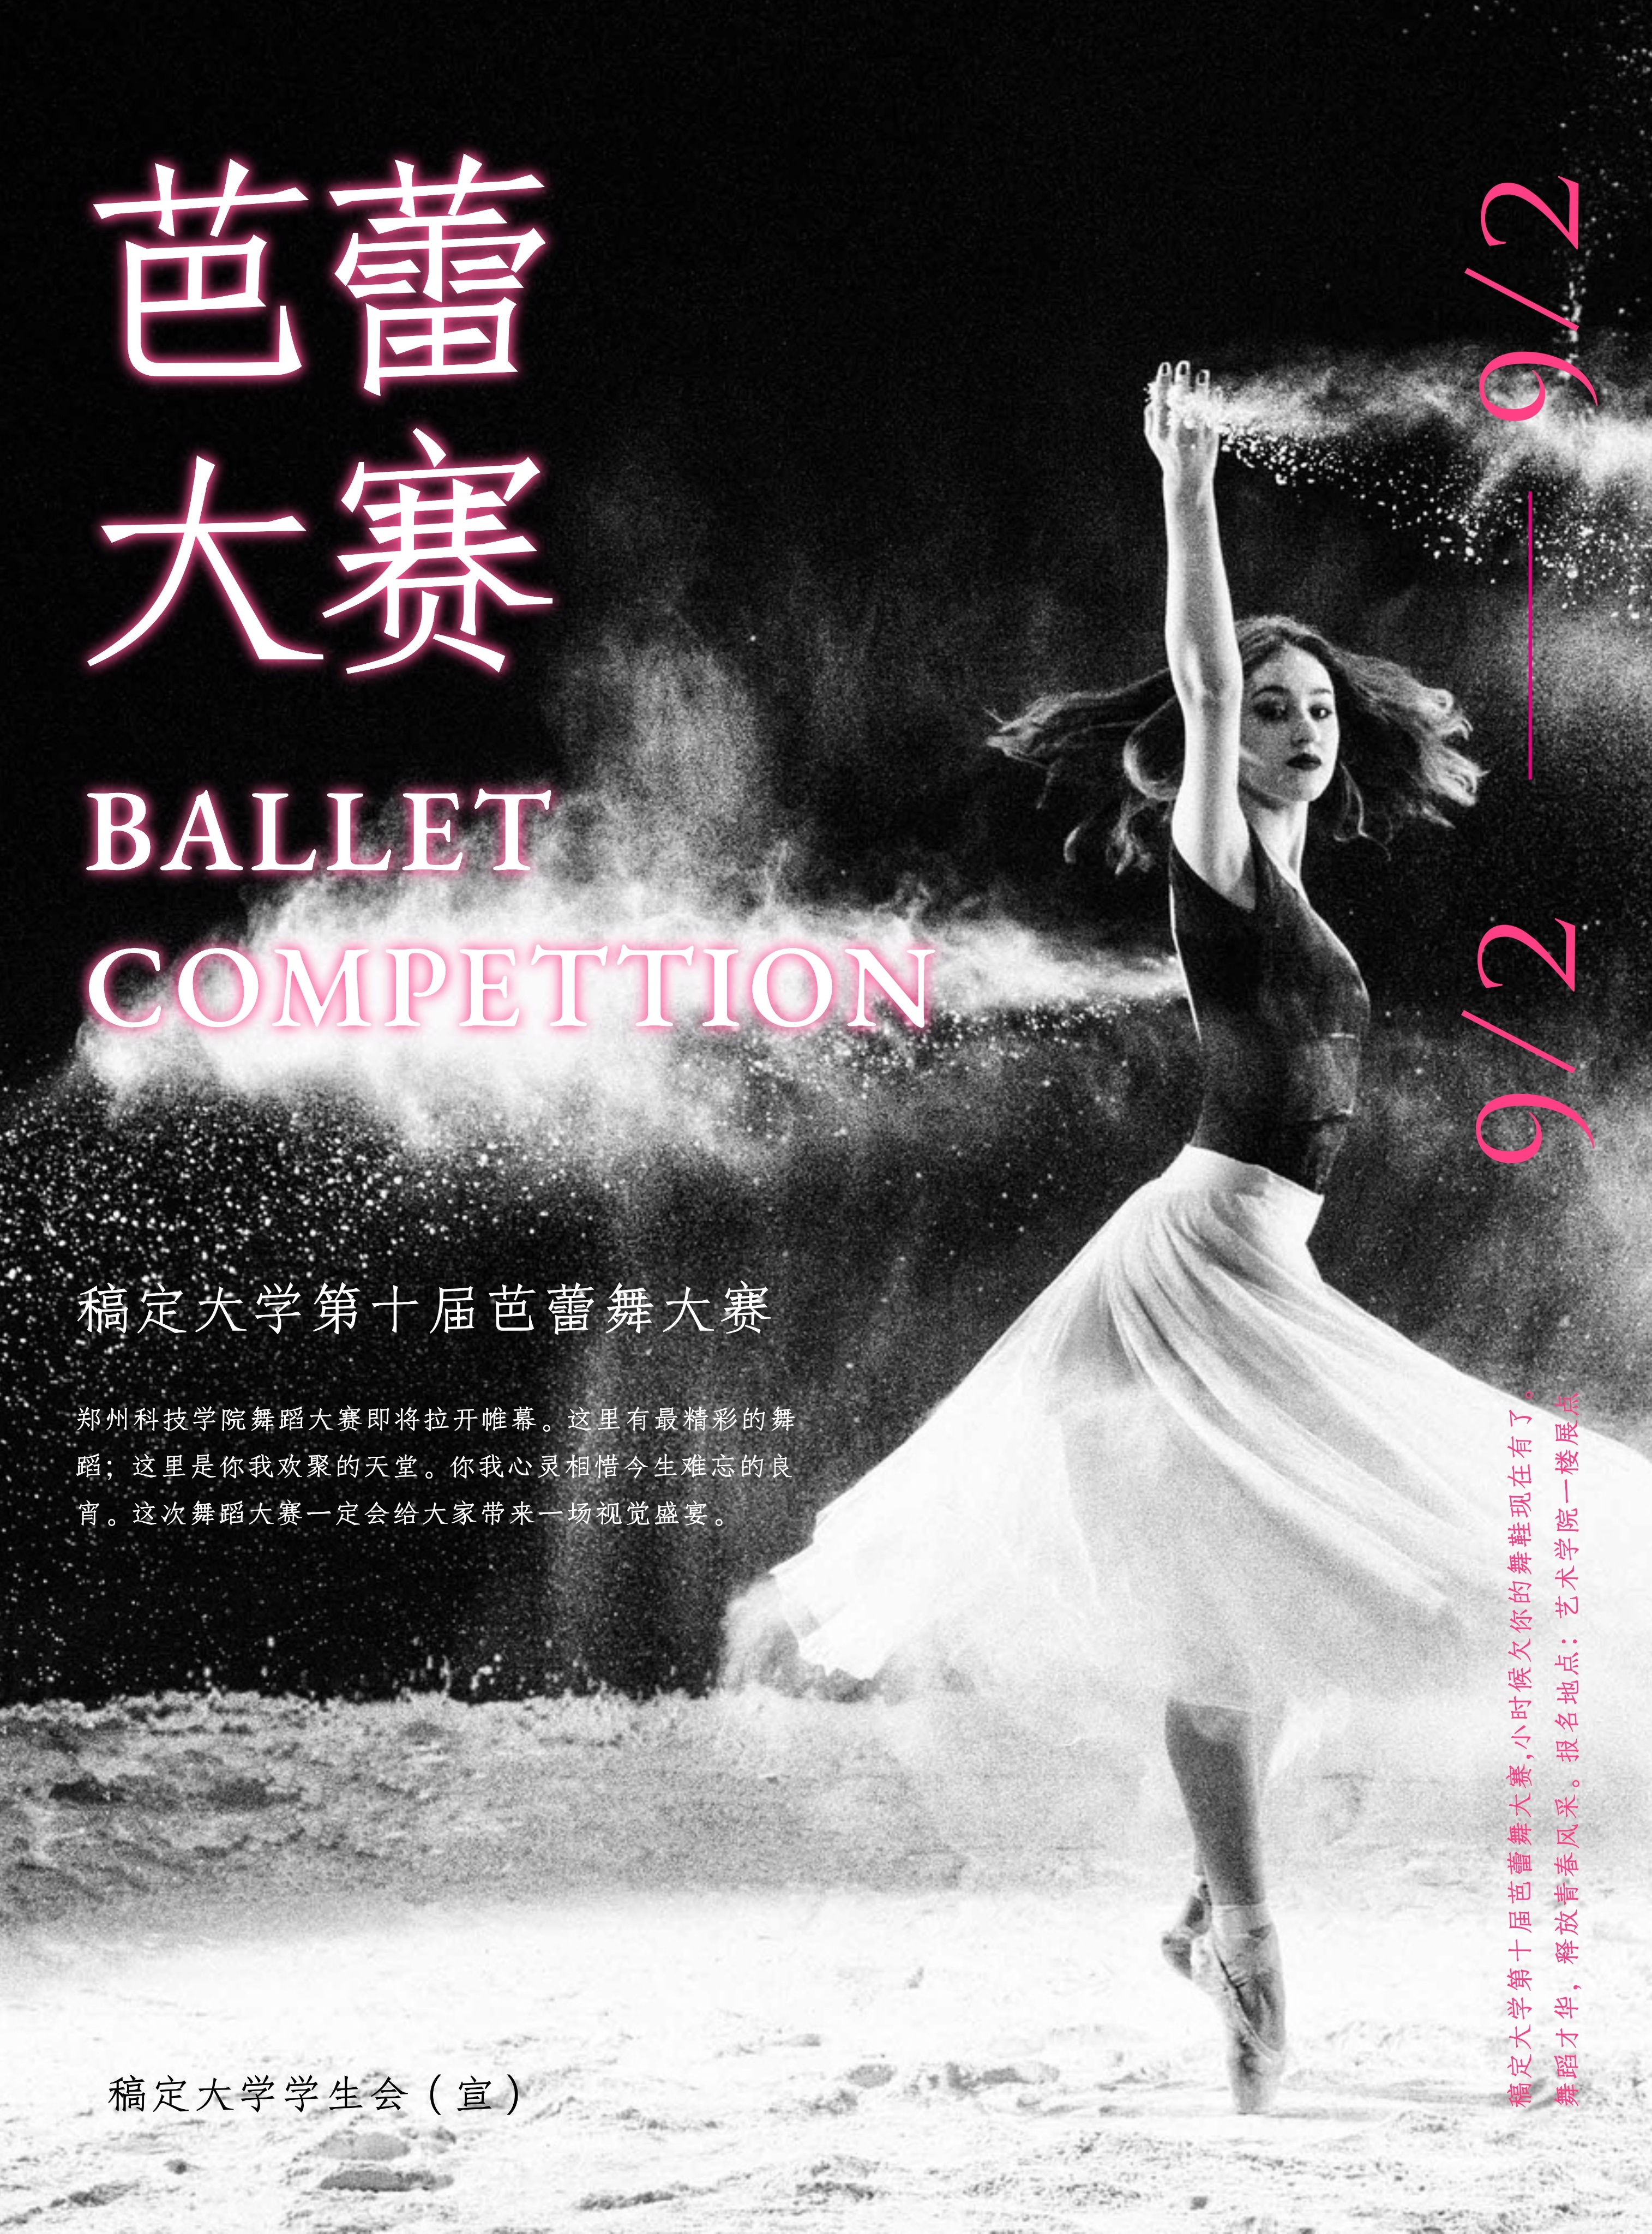 舞蹈社芭蕾舞招生比赛印刷海报预览效果